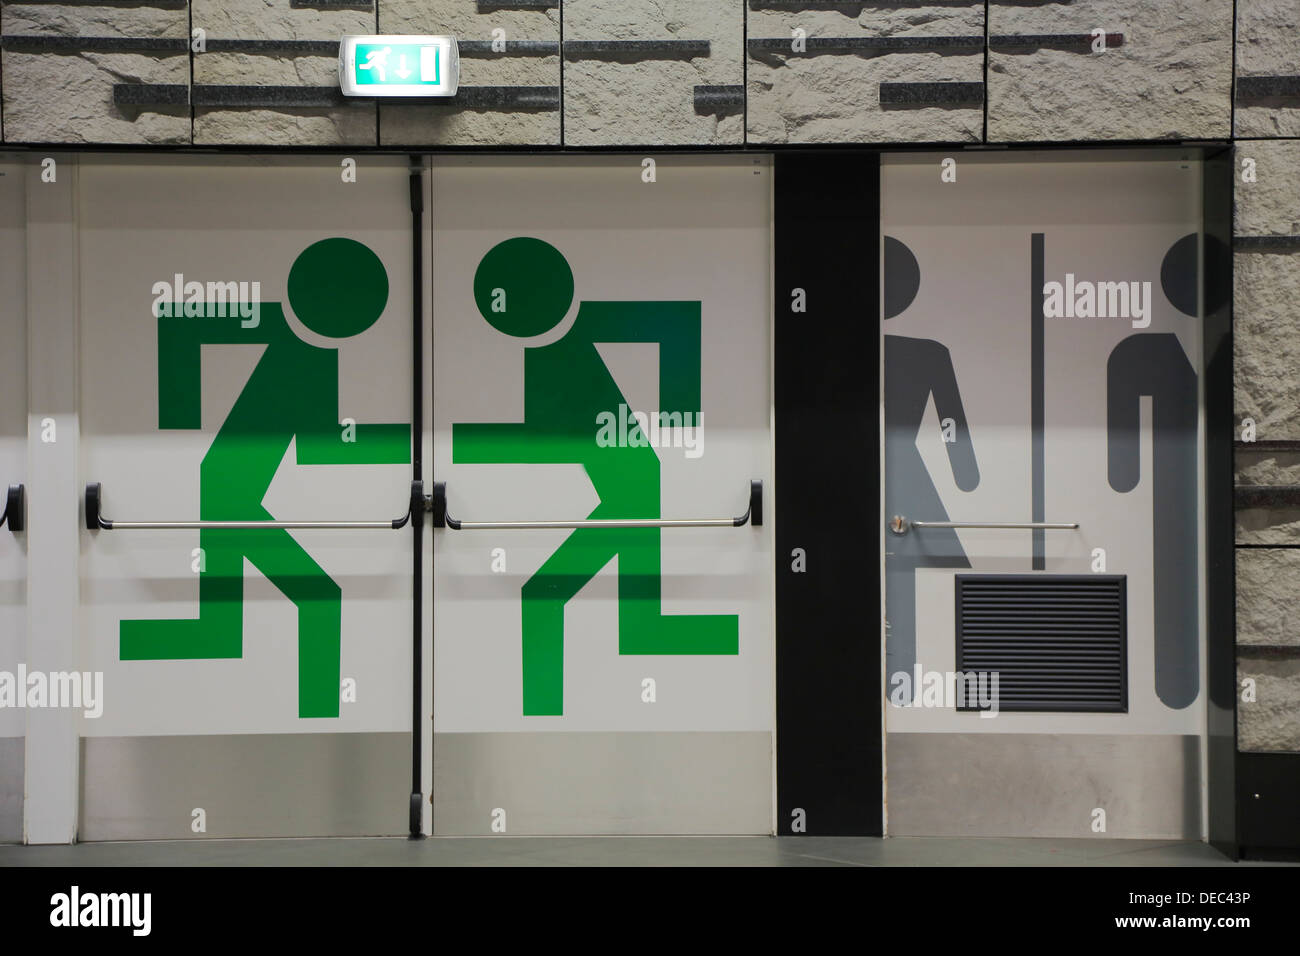 La sortie d'urgence et de toilettes pictogrammes sur les portes de la gare à l'aéroport, Bruxelles, région bruxelloise, Belgique Banque D'Images